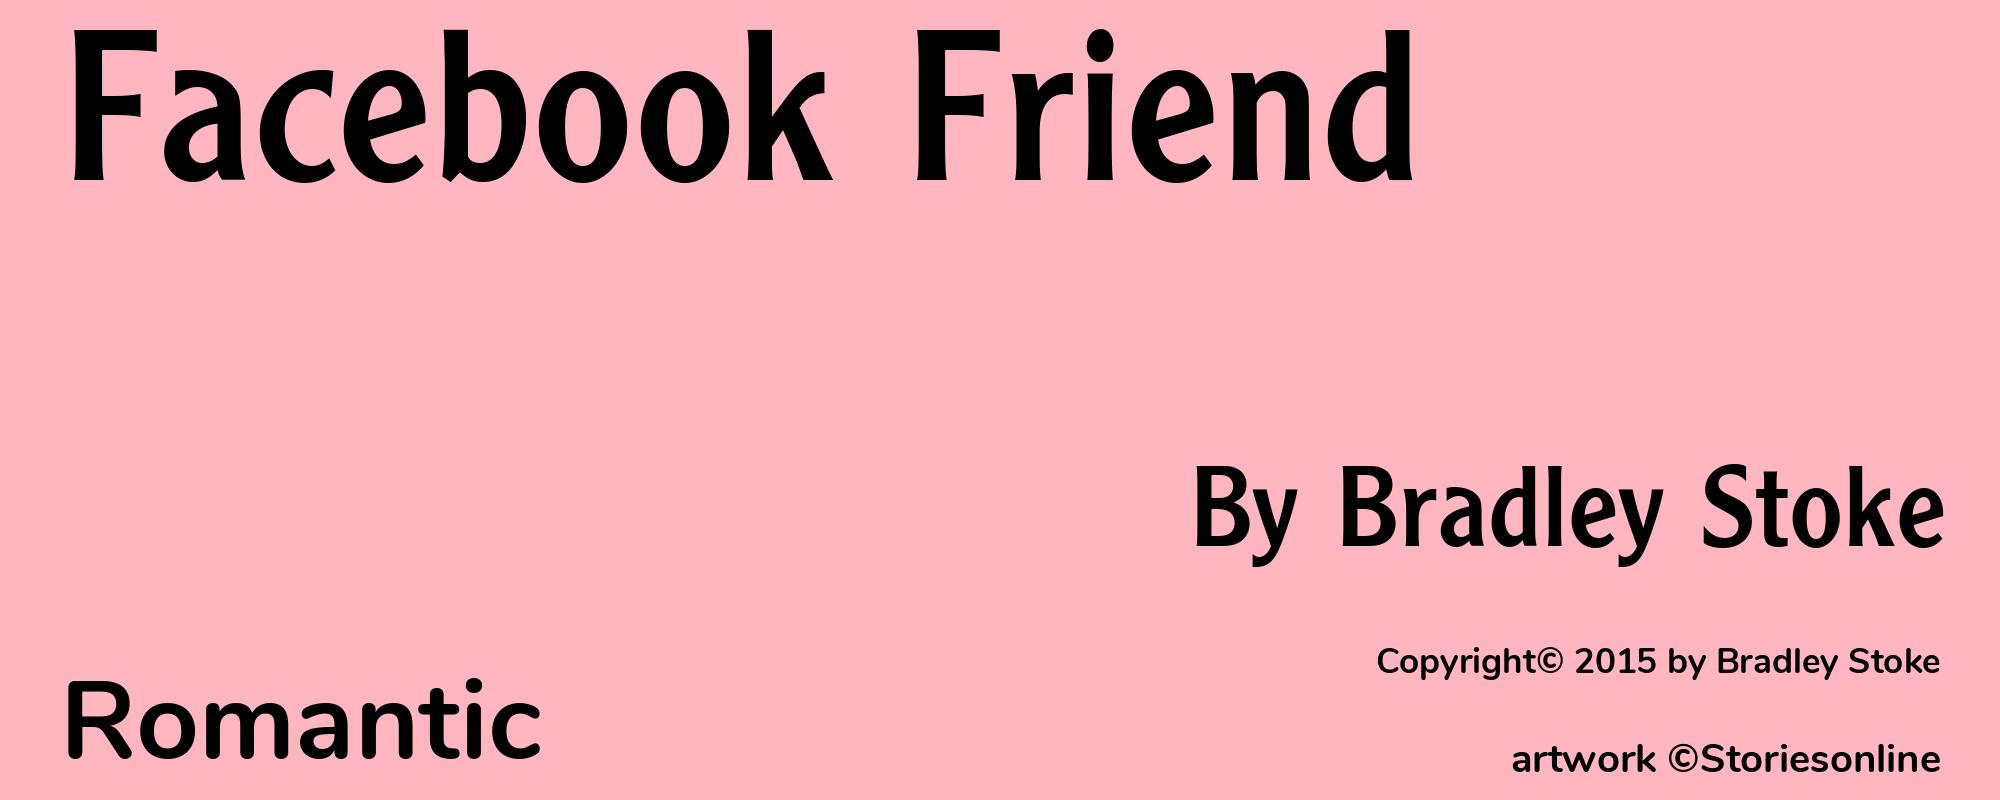 Facebook Friend - Cover